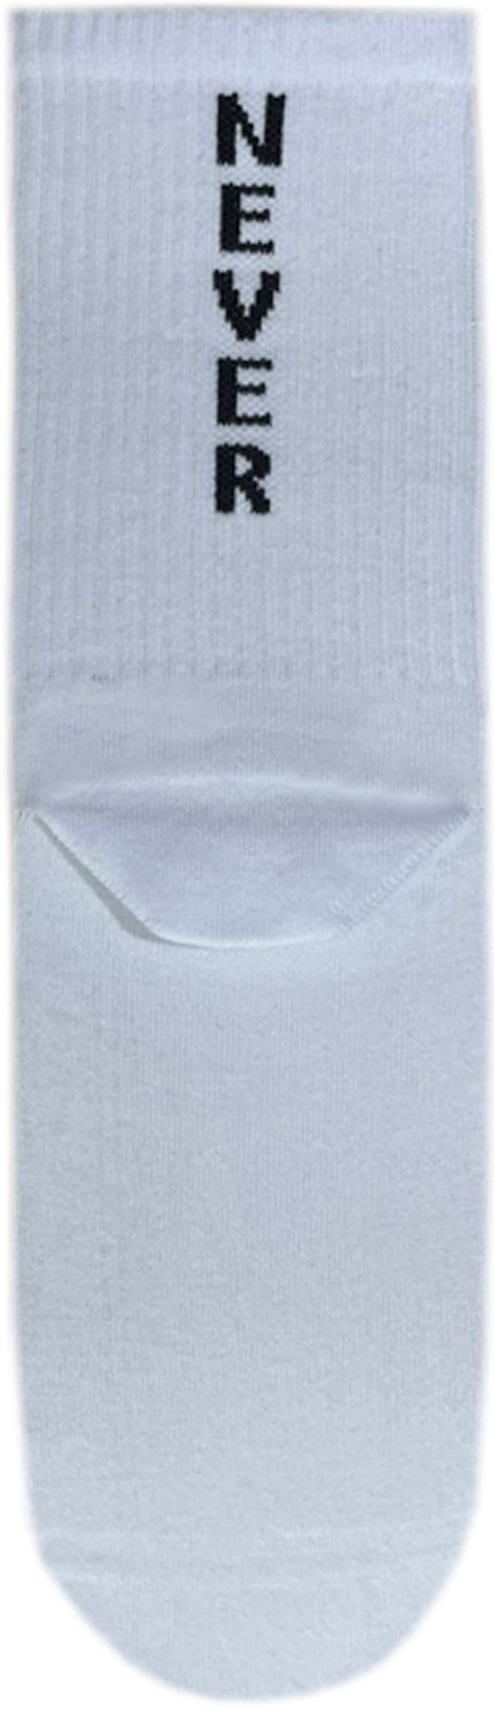 Шкарпетки чоловічі Premier Socks 44-45 1 пара білі з принтом (4820163317939)фото2